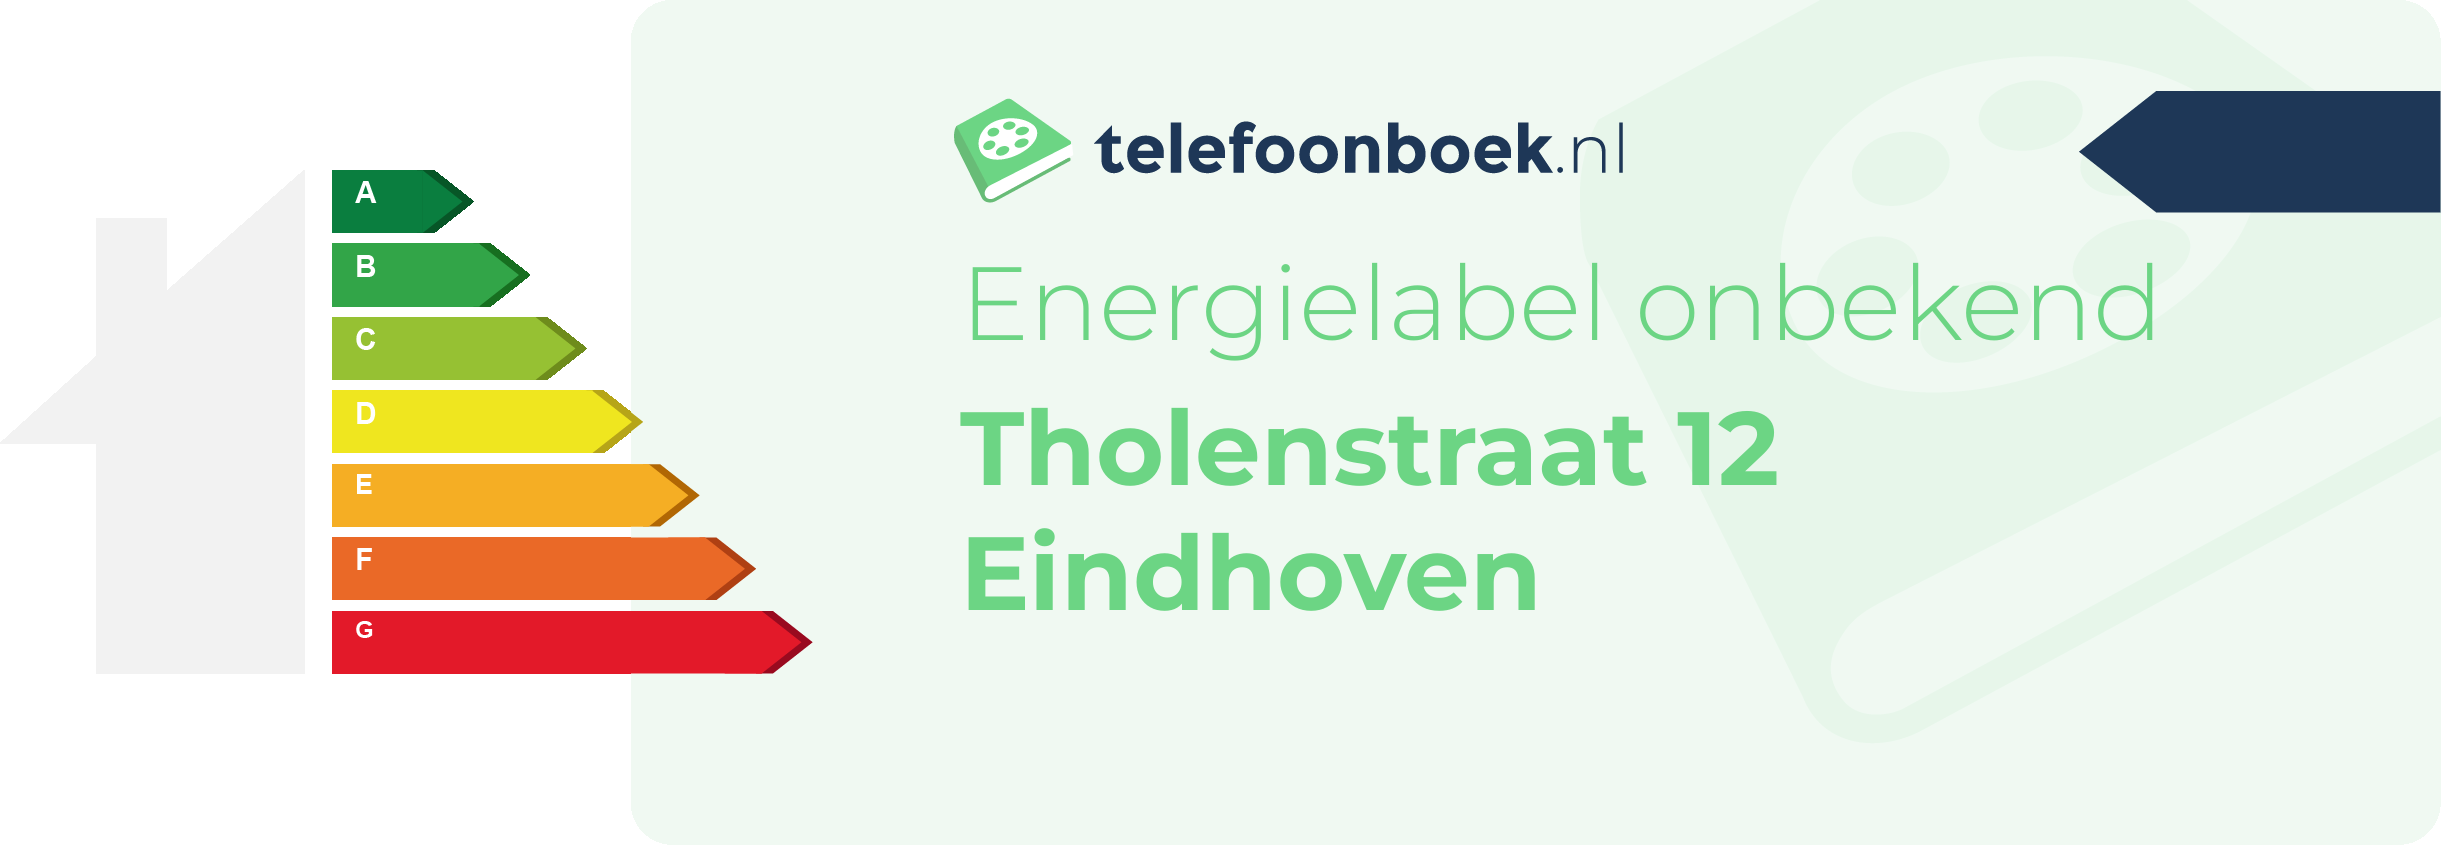 Energielabel Tholenstraat 12 Eindhoven